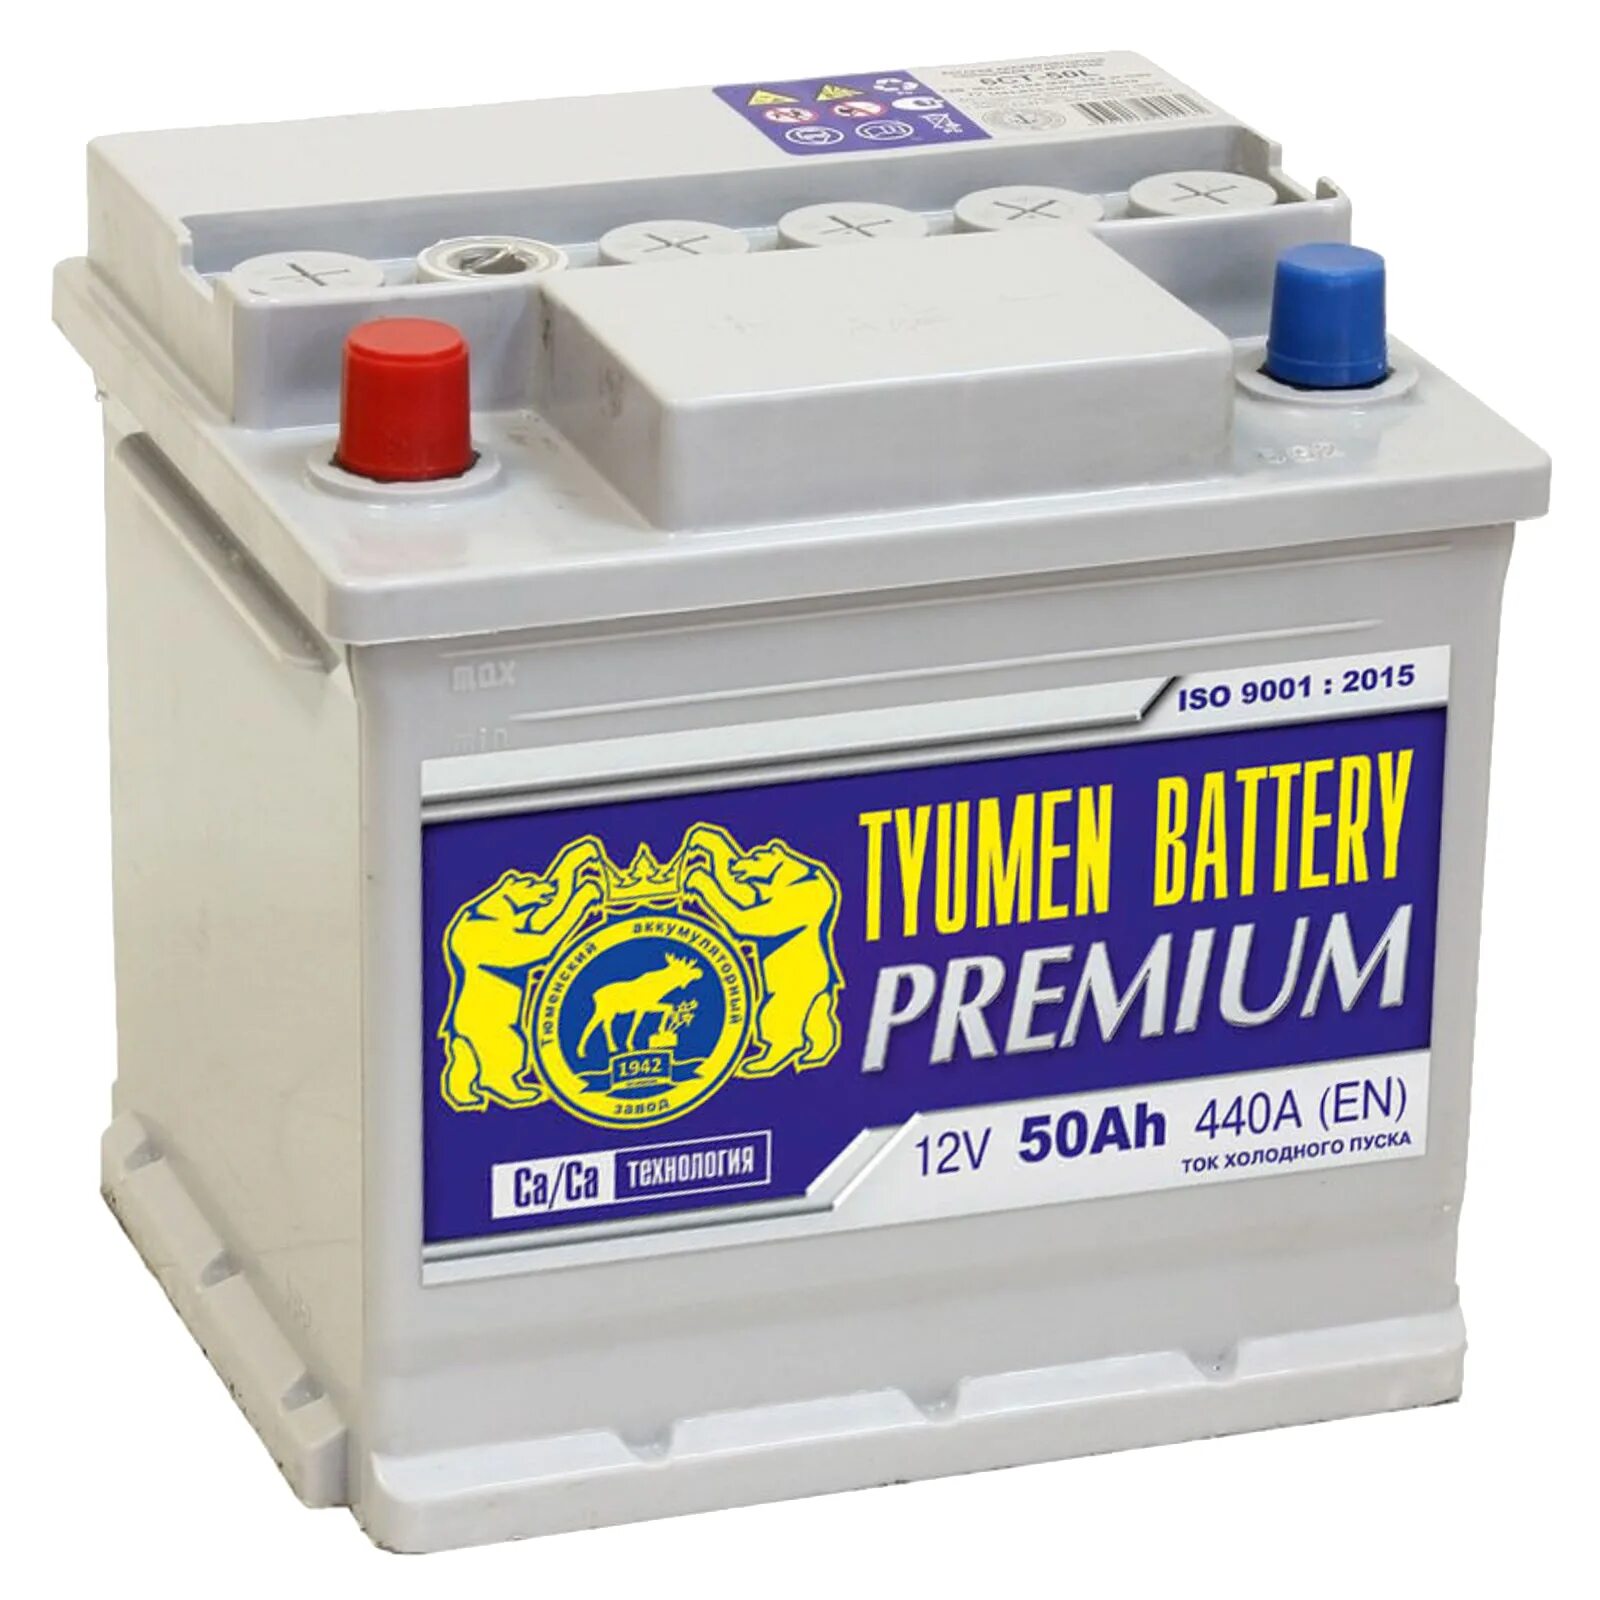 Tyumen Battery" Premium 145 Ач. Аккумулятор Tyumen Battery Premium. 6ст-50l Premium. АКБ Тyumen Battery Premium 6ст-50.1l.